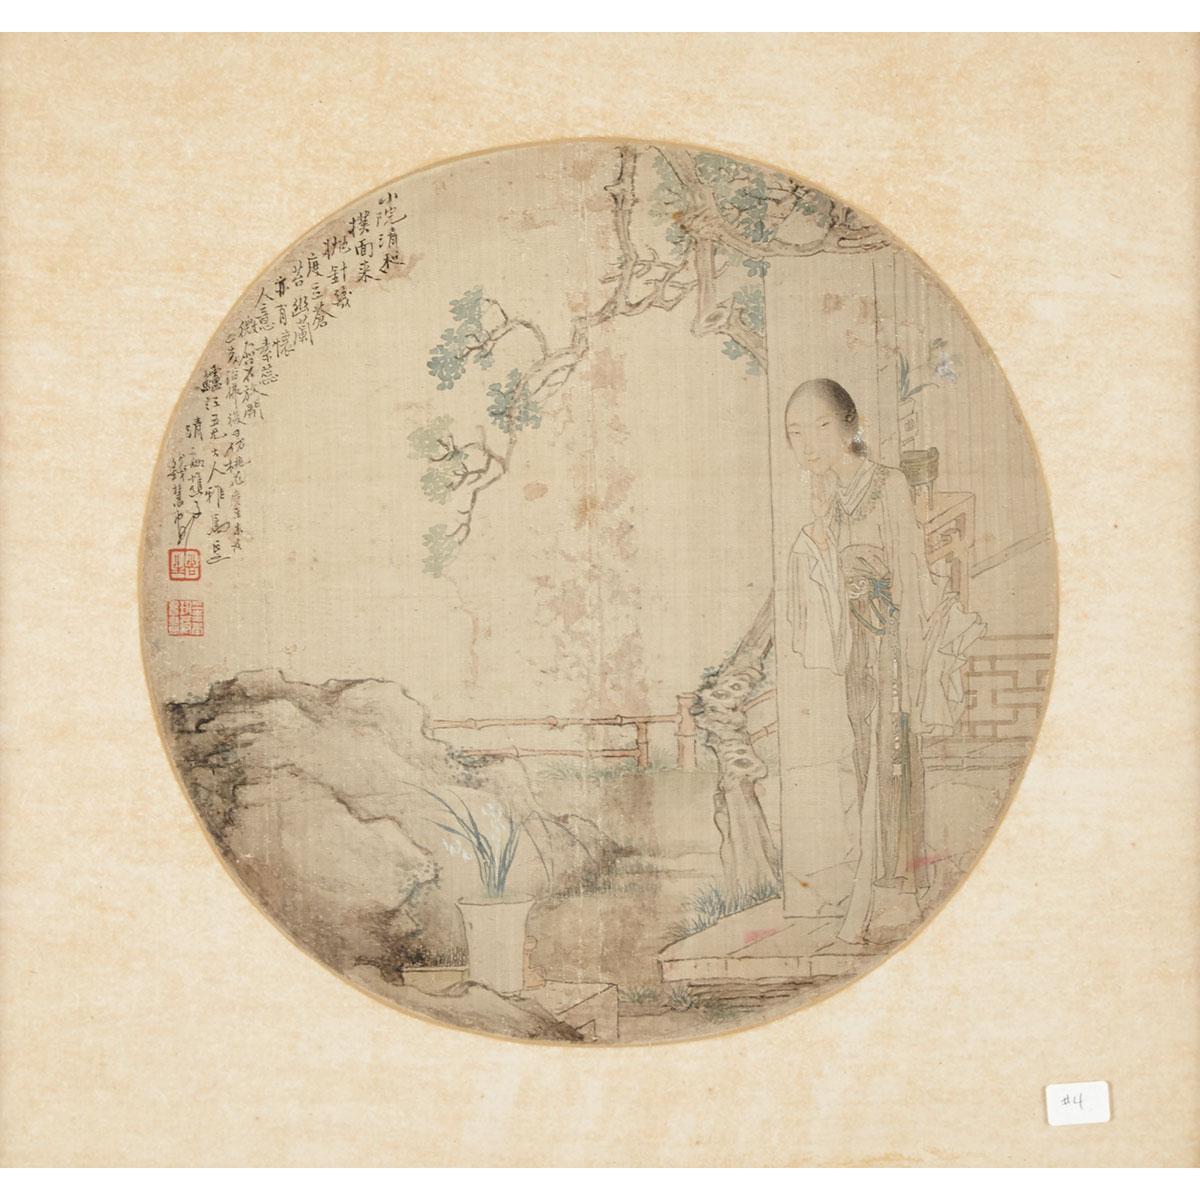 Attributed to Qian Hui’an (1833-1911)